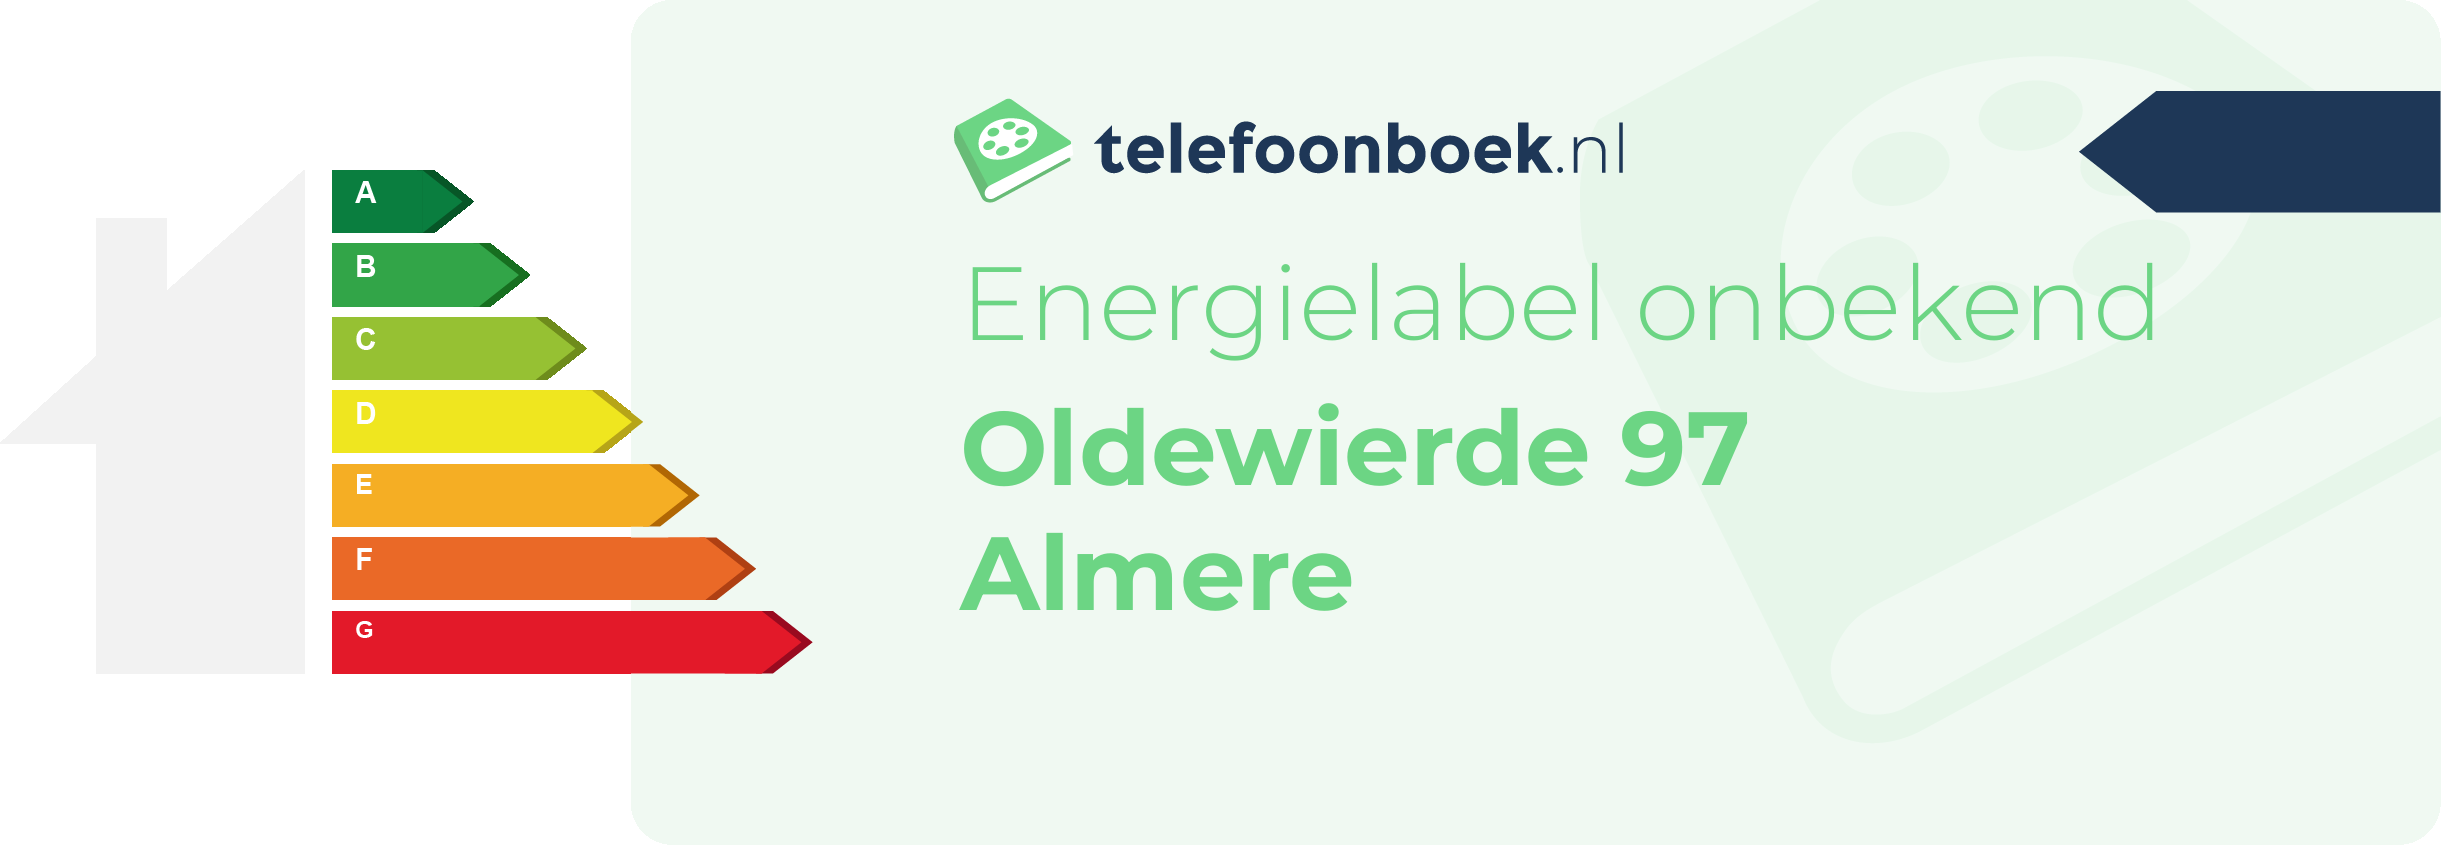 Energielabel Oldewierde 97 Almere